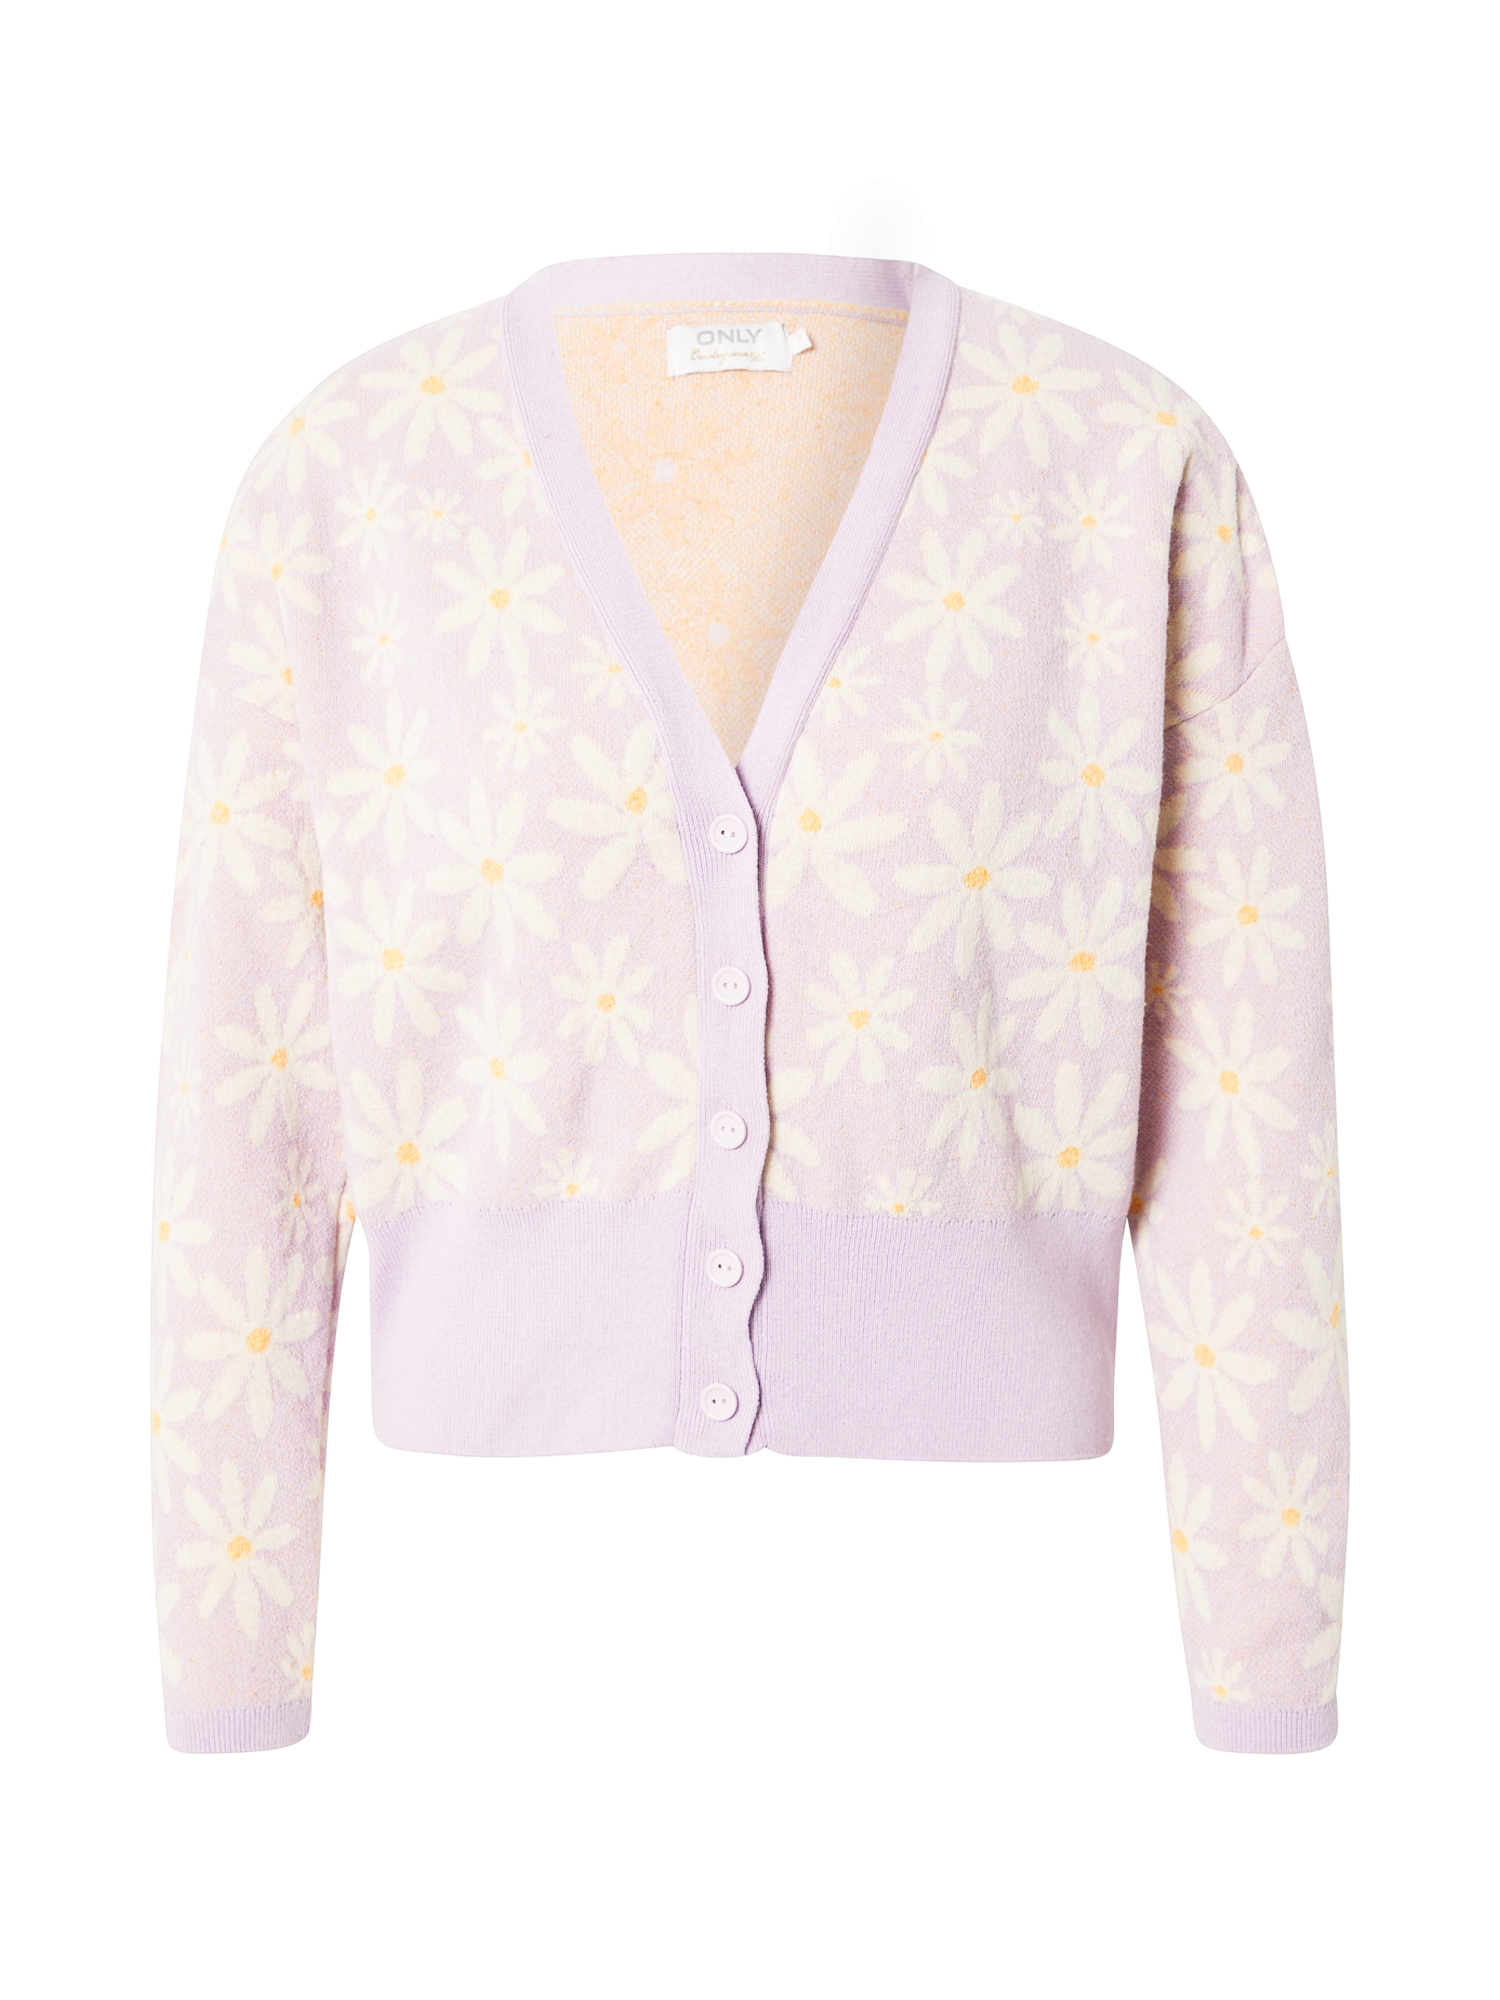 Swetry & dzianina Odzież ONLY Kardigan BLOSSOM w kolorze Pastelowy Fioletm 